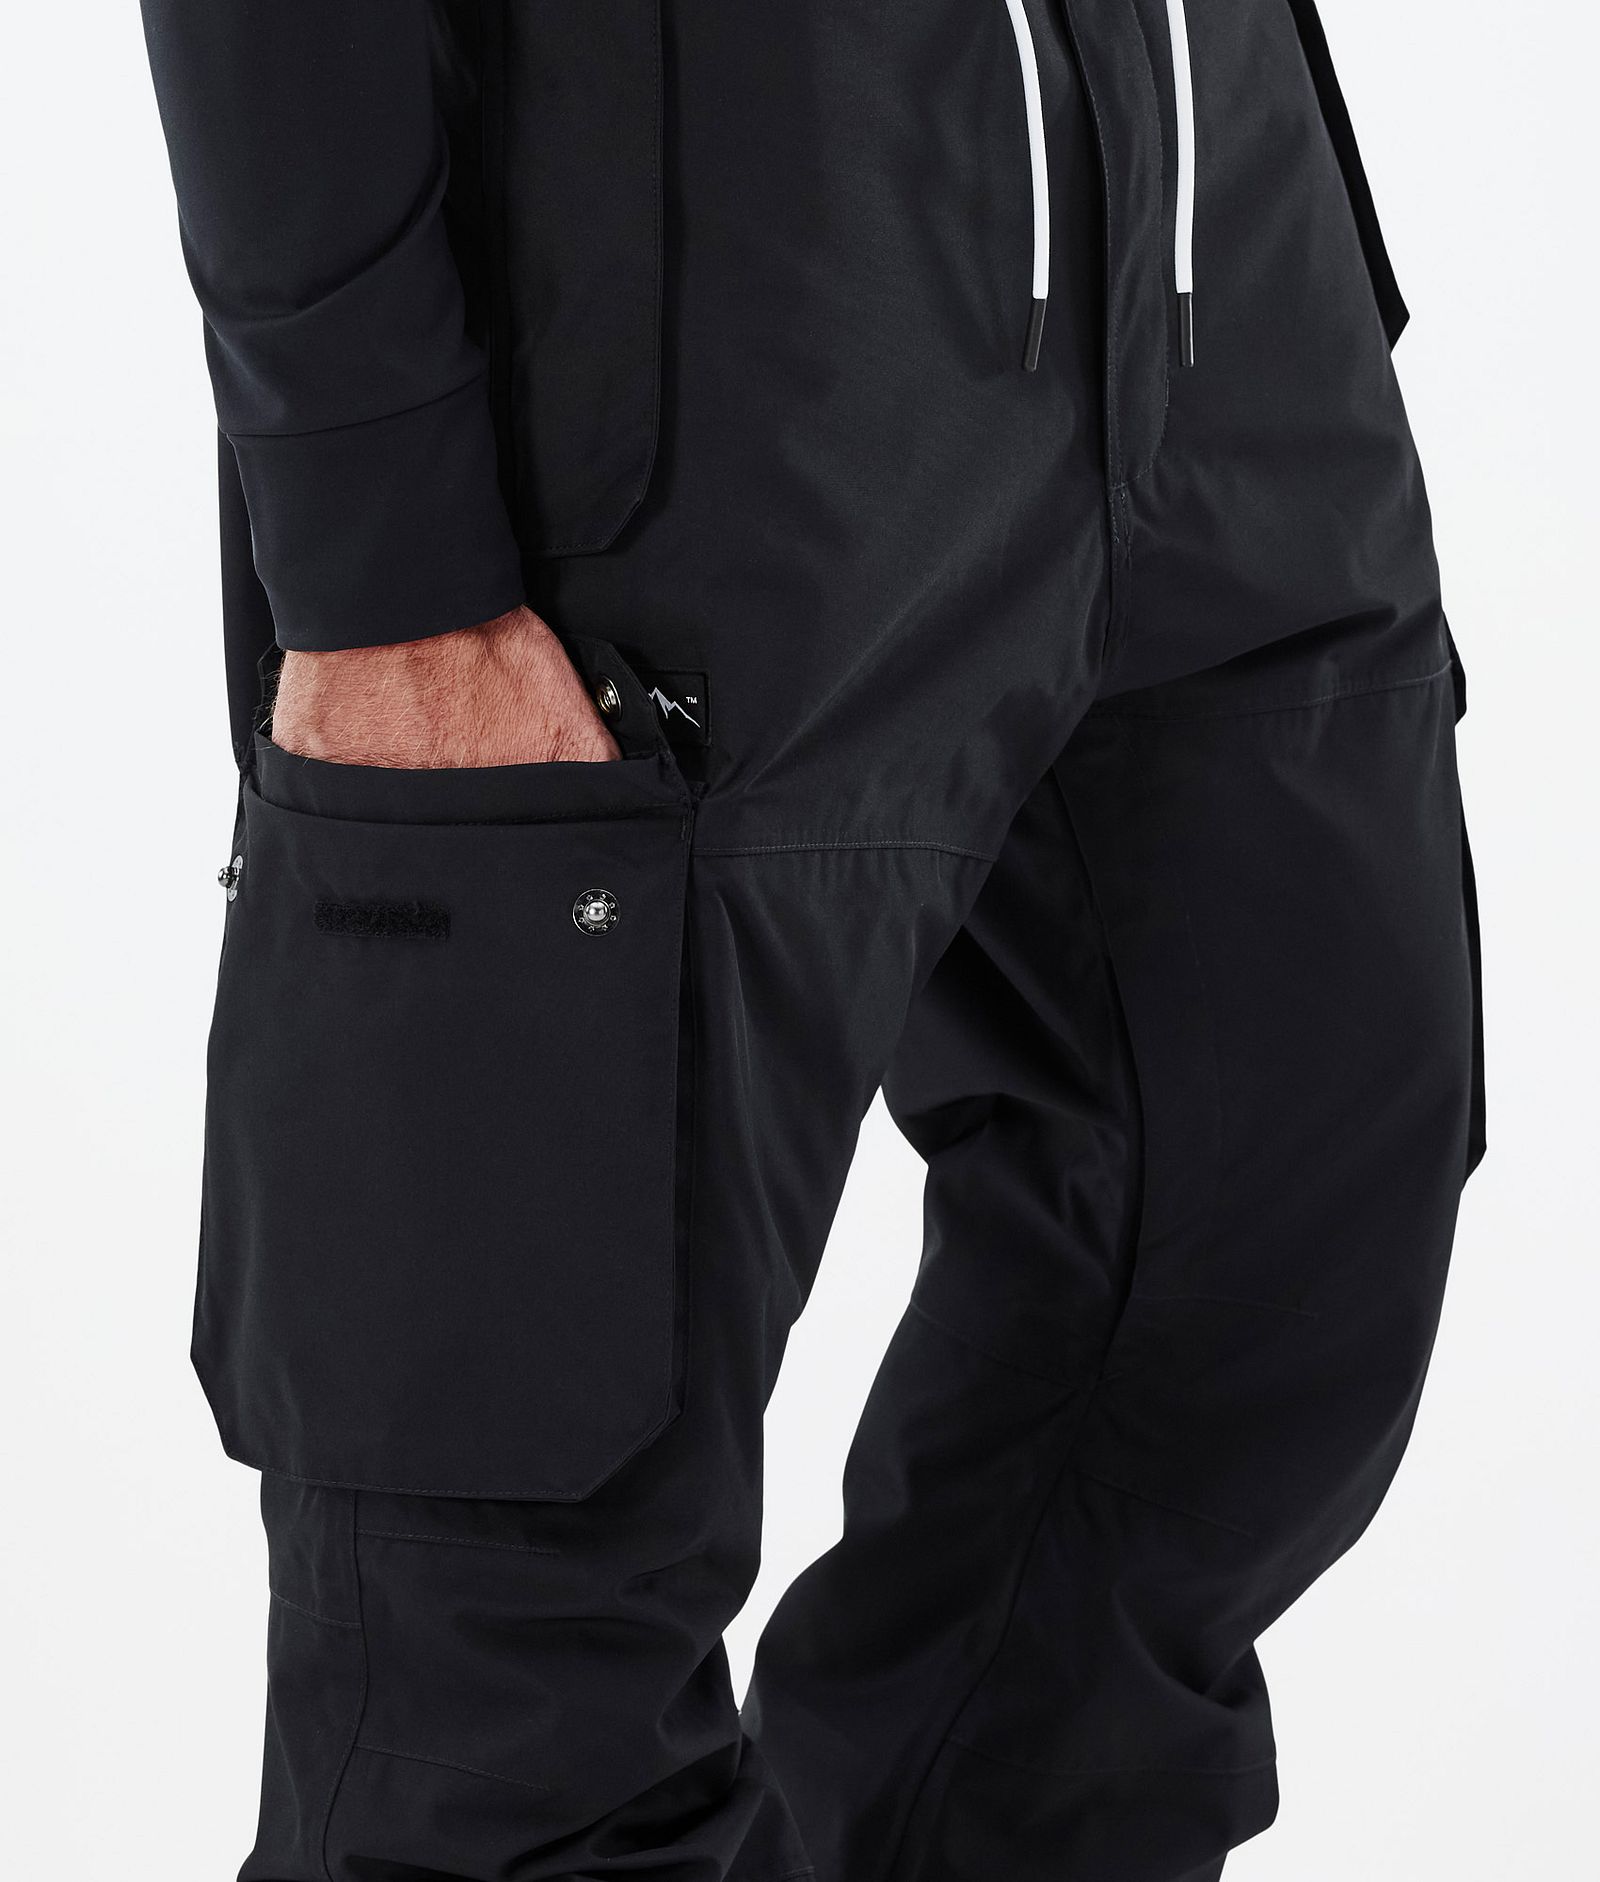 Dope Iconic Pantalon de Snowboard Homme Black